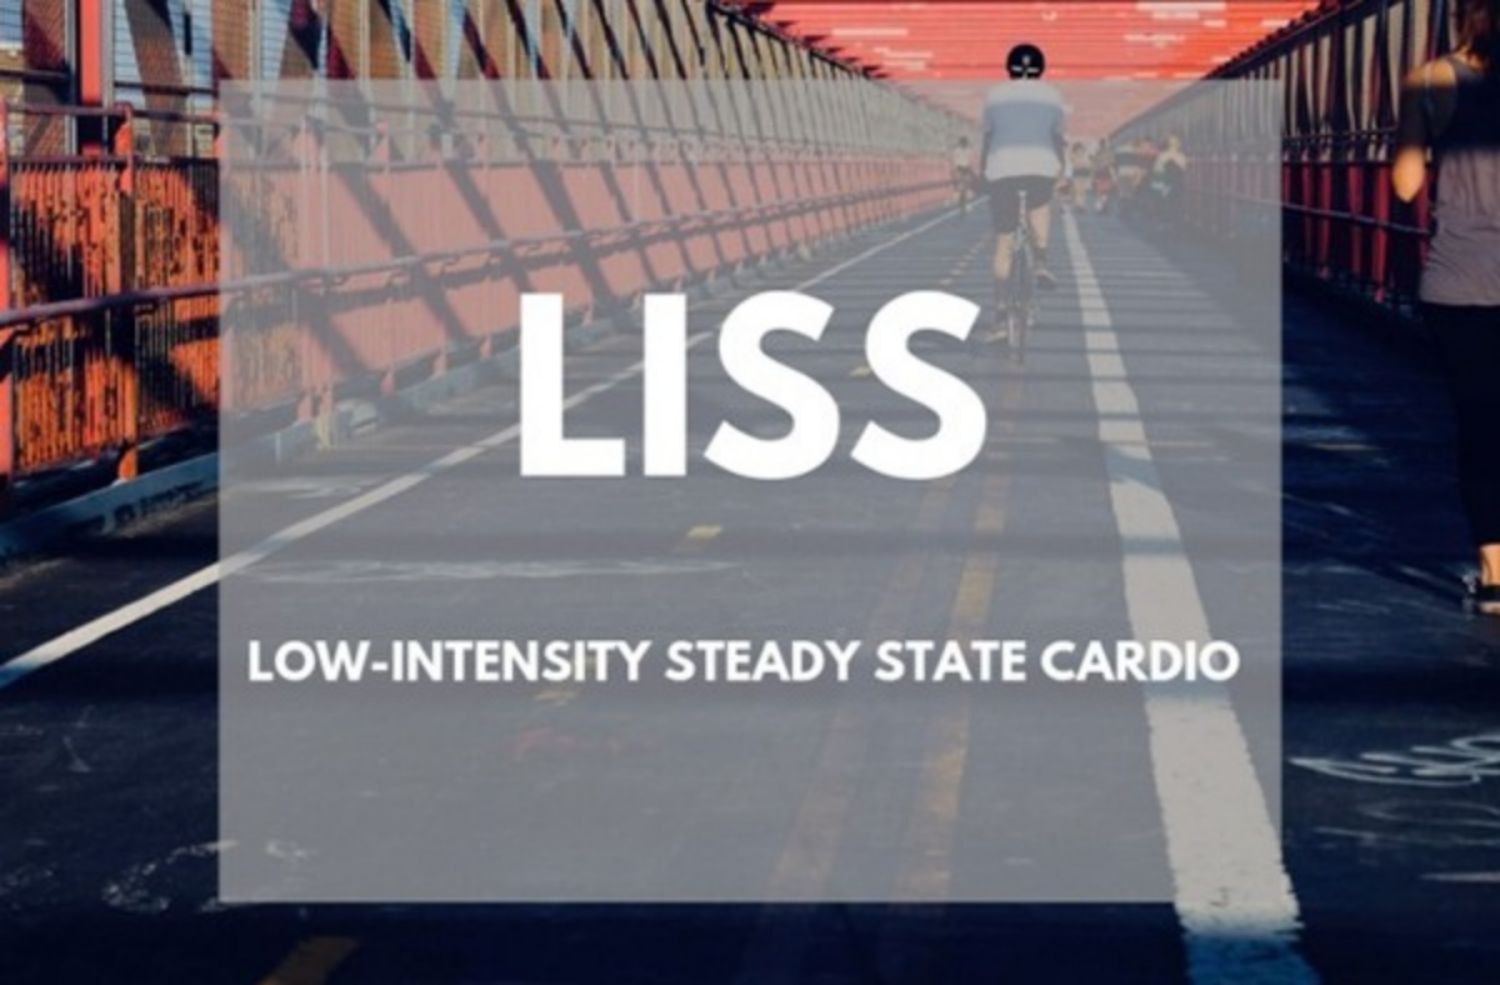 LISS cardio là gì và có những ưu, nhược điểm nào?